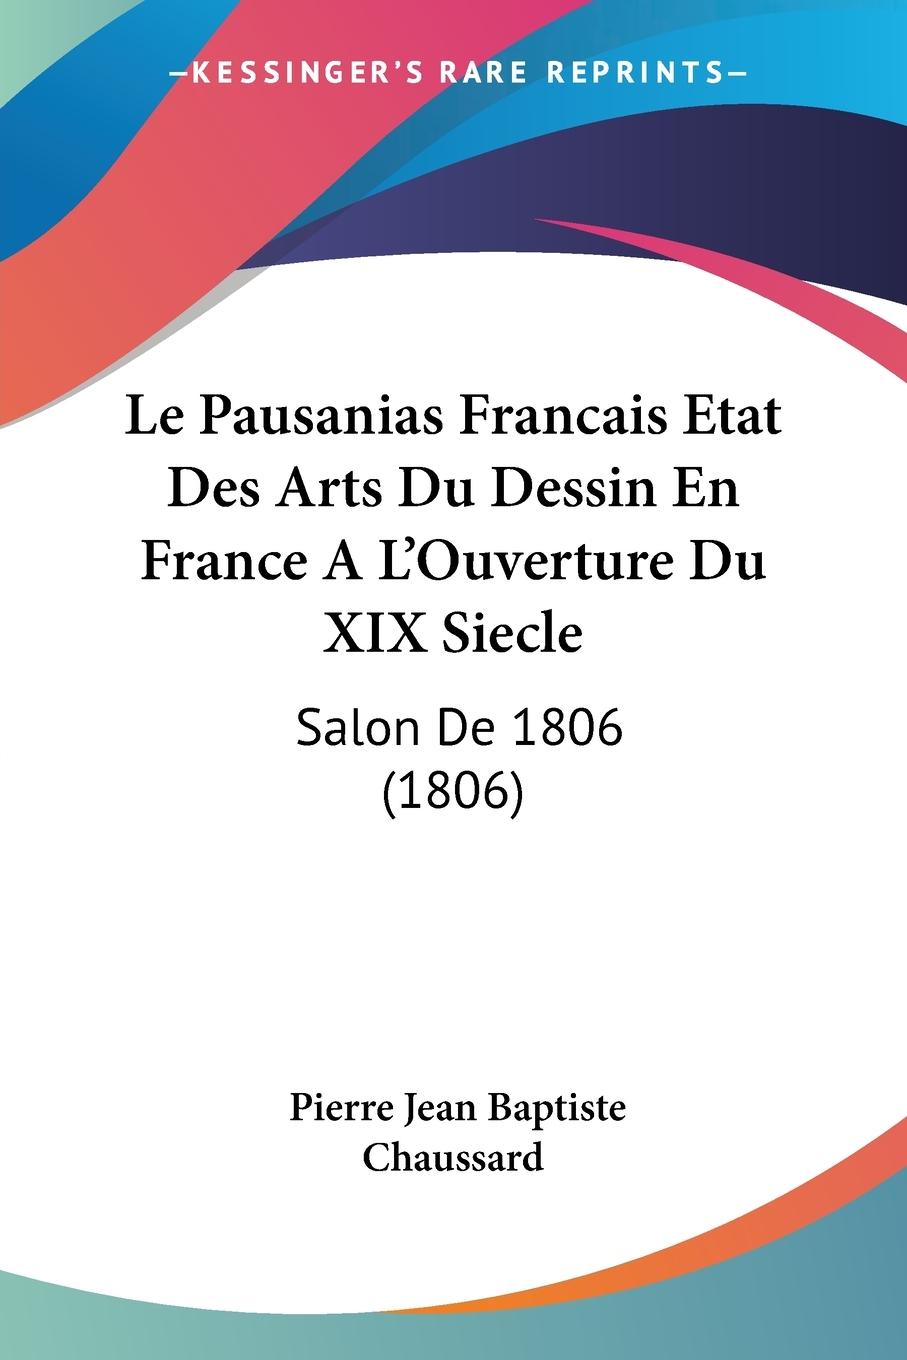 Le Pausanias Francais Etat Des Arts Du Dessin En France A L Ouverture Du XIX Siecle - Chaussard, Pierre Jean Baptiste